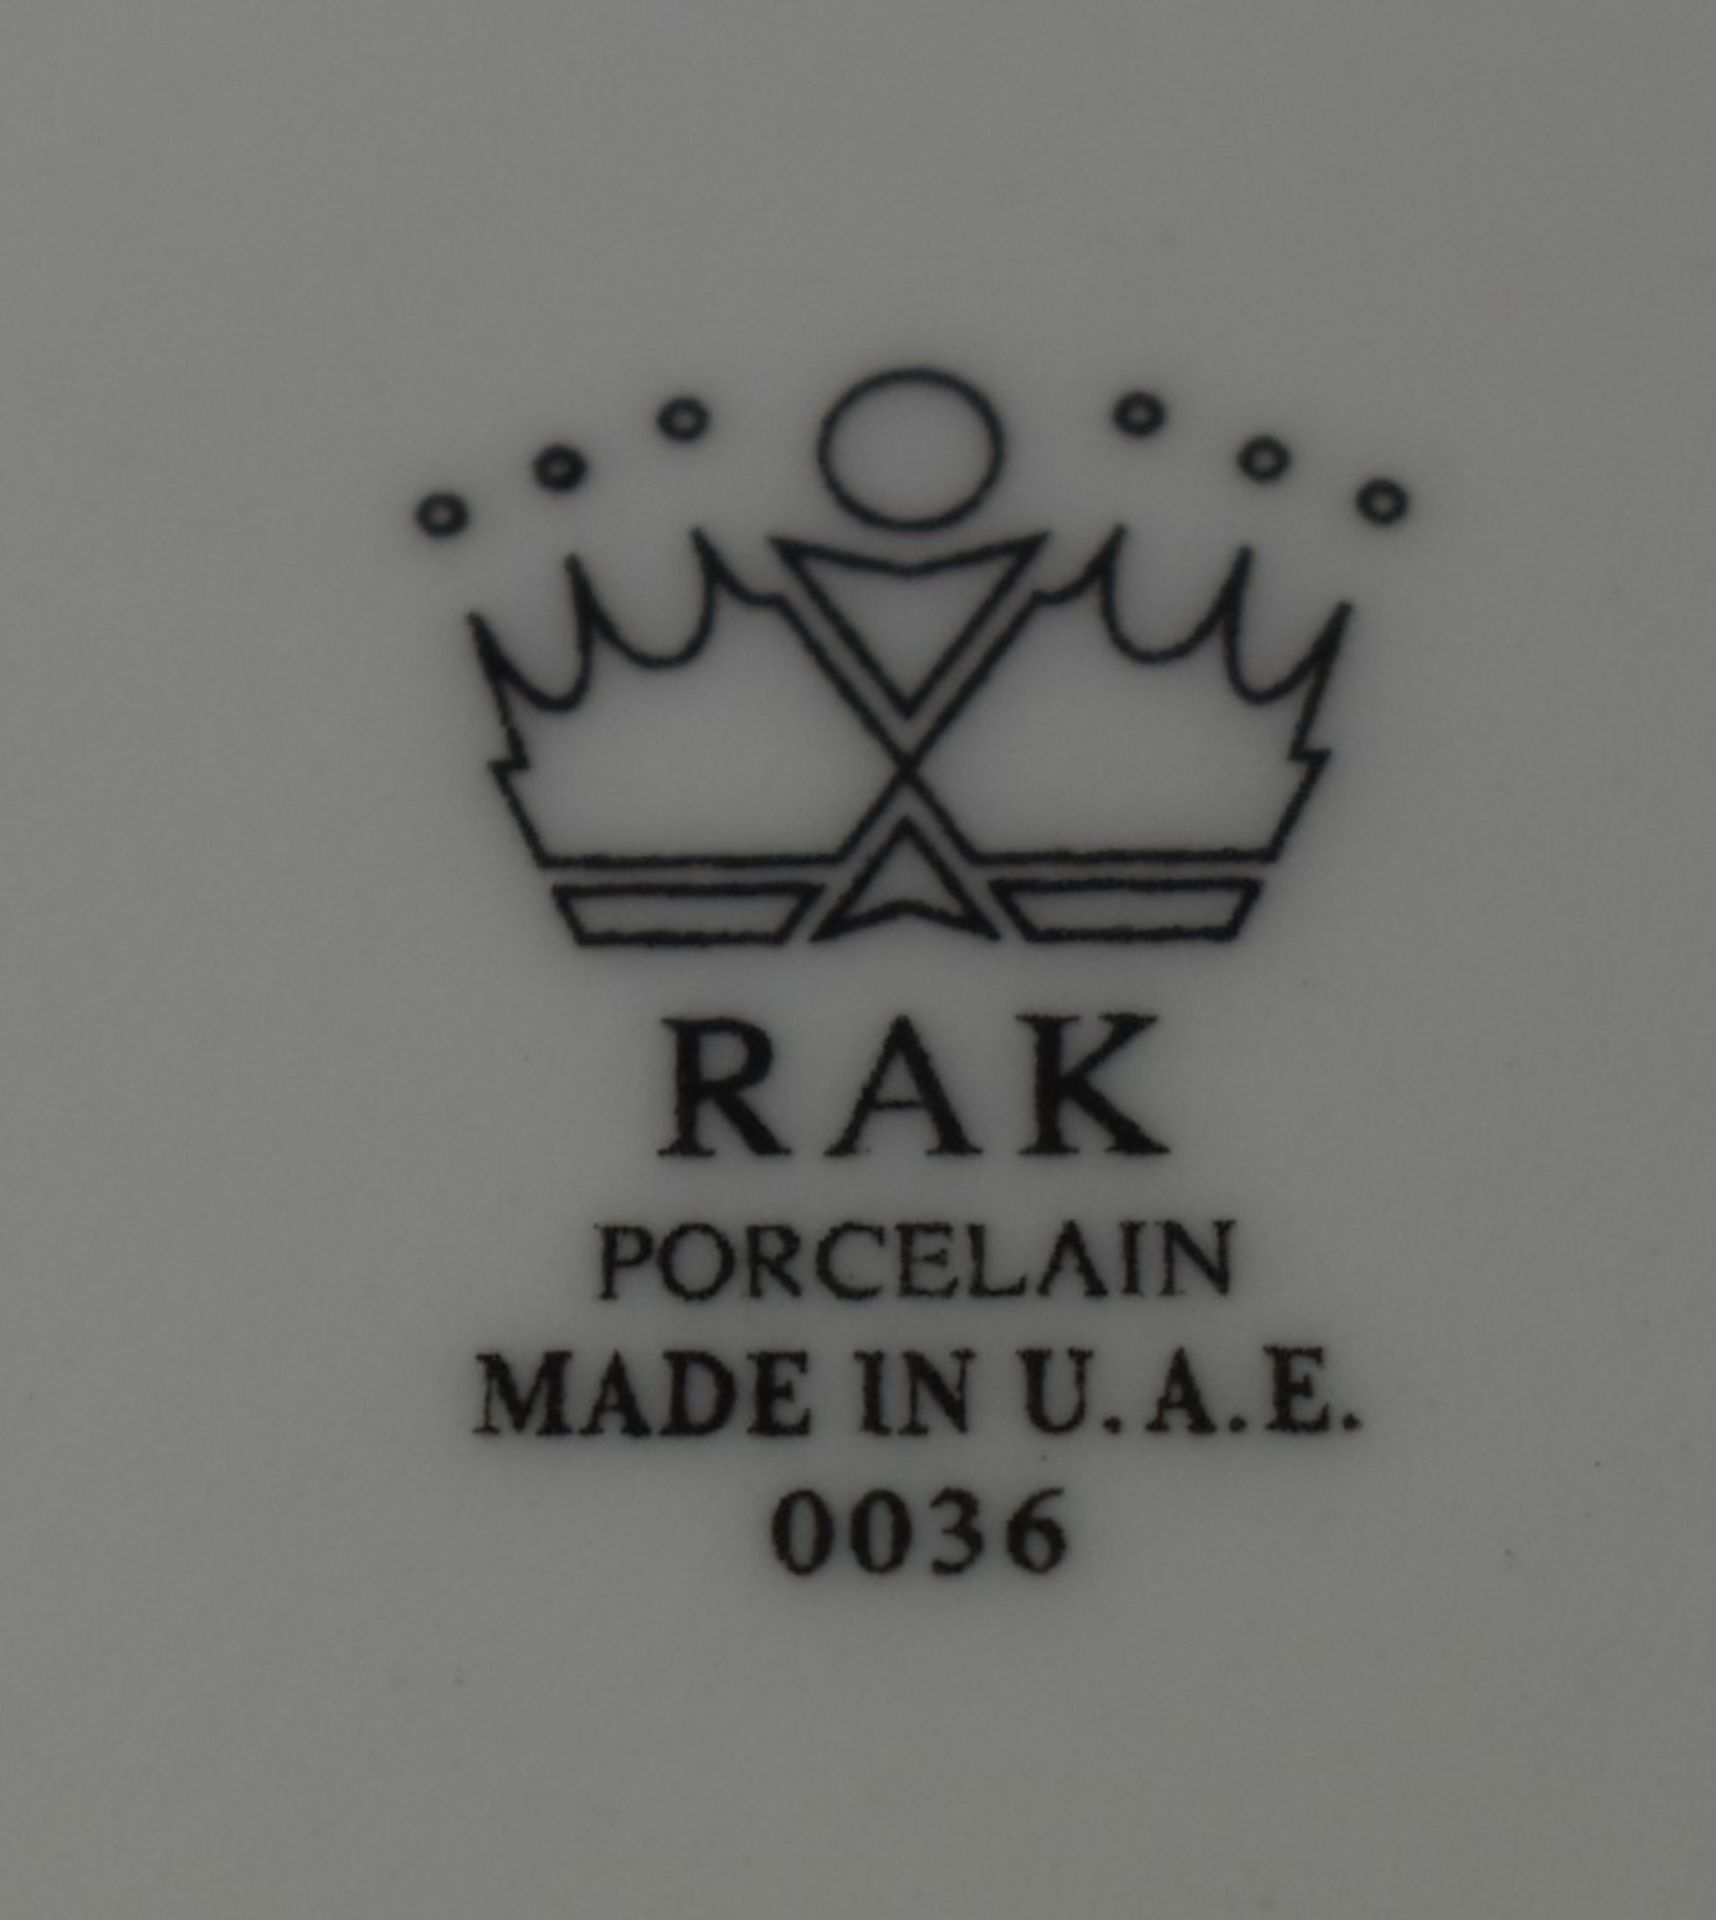 9 x RAK Porcelain Banquet 26cm Ivory Porcelain Wide Rim Soup Bowls - CL011 - Ref: PX278 - - Image 6 of 6